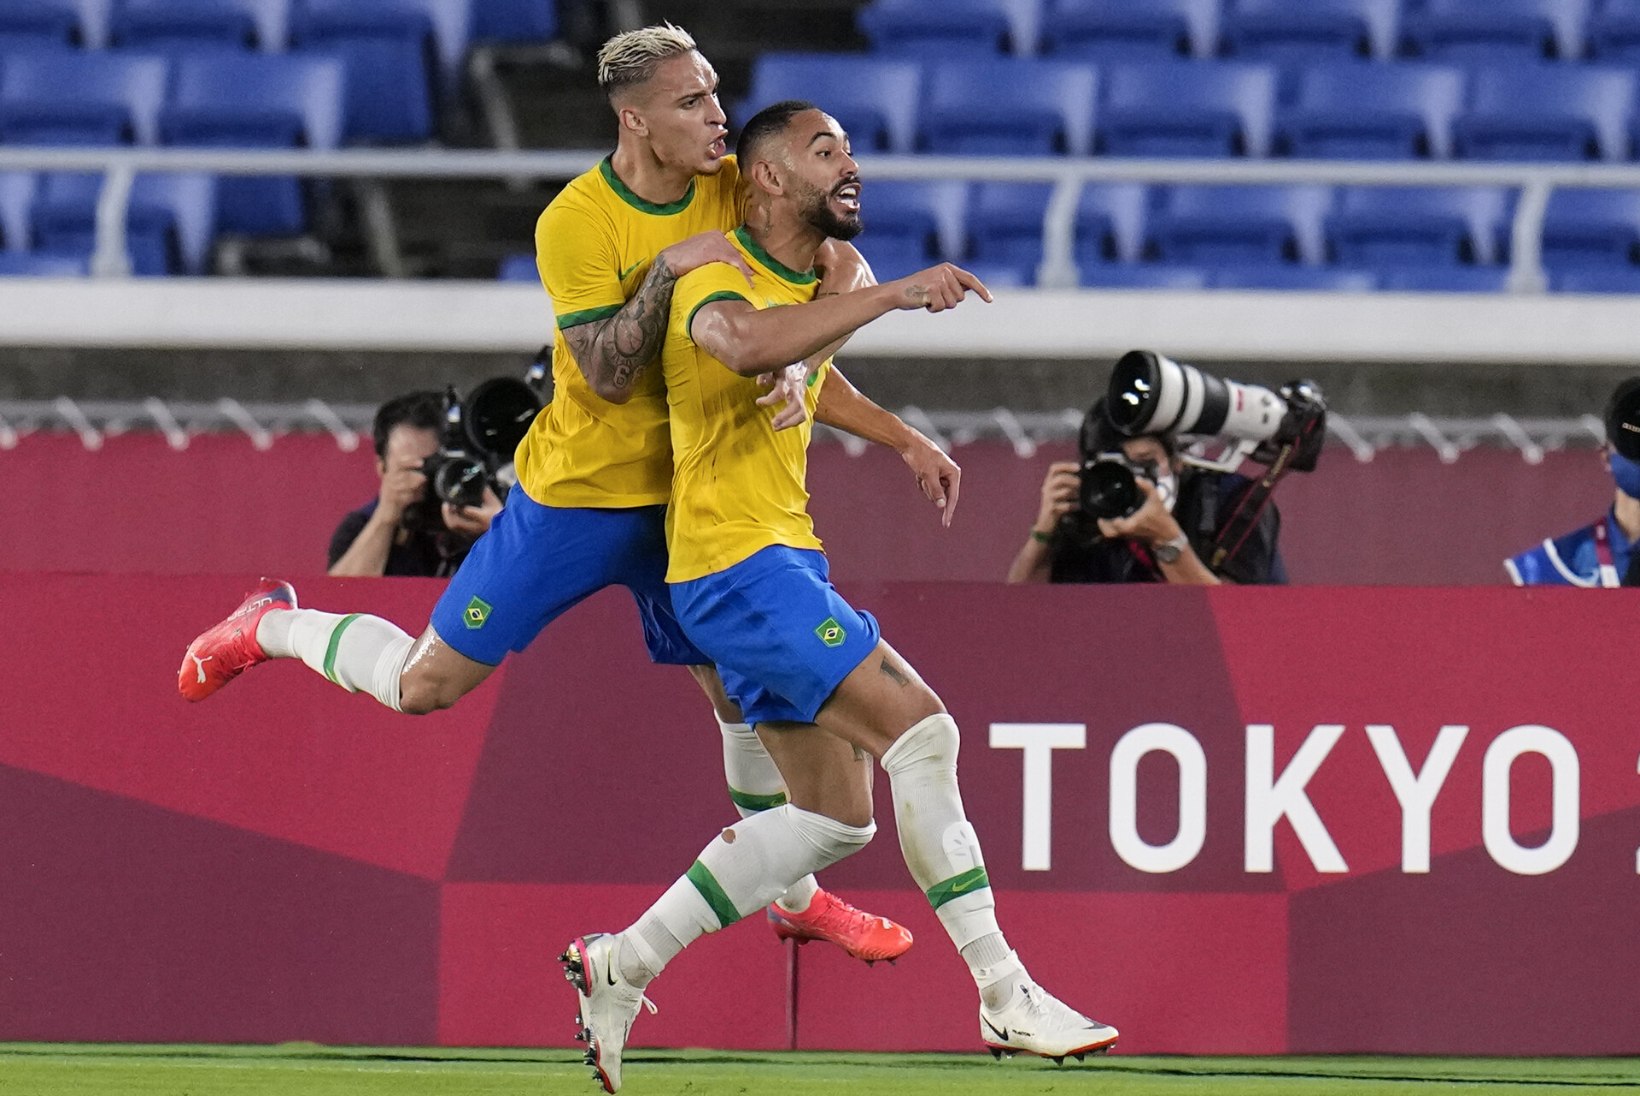 ÕL TOKYOS | Euroopa jalgpallimeeskondade kullapõud jätkub, Brasiilia tõusis eksklusiivsesse klubisse